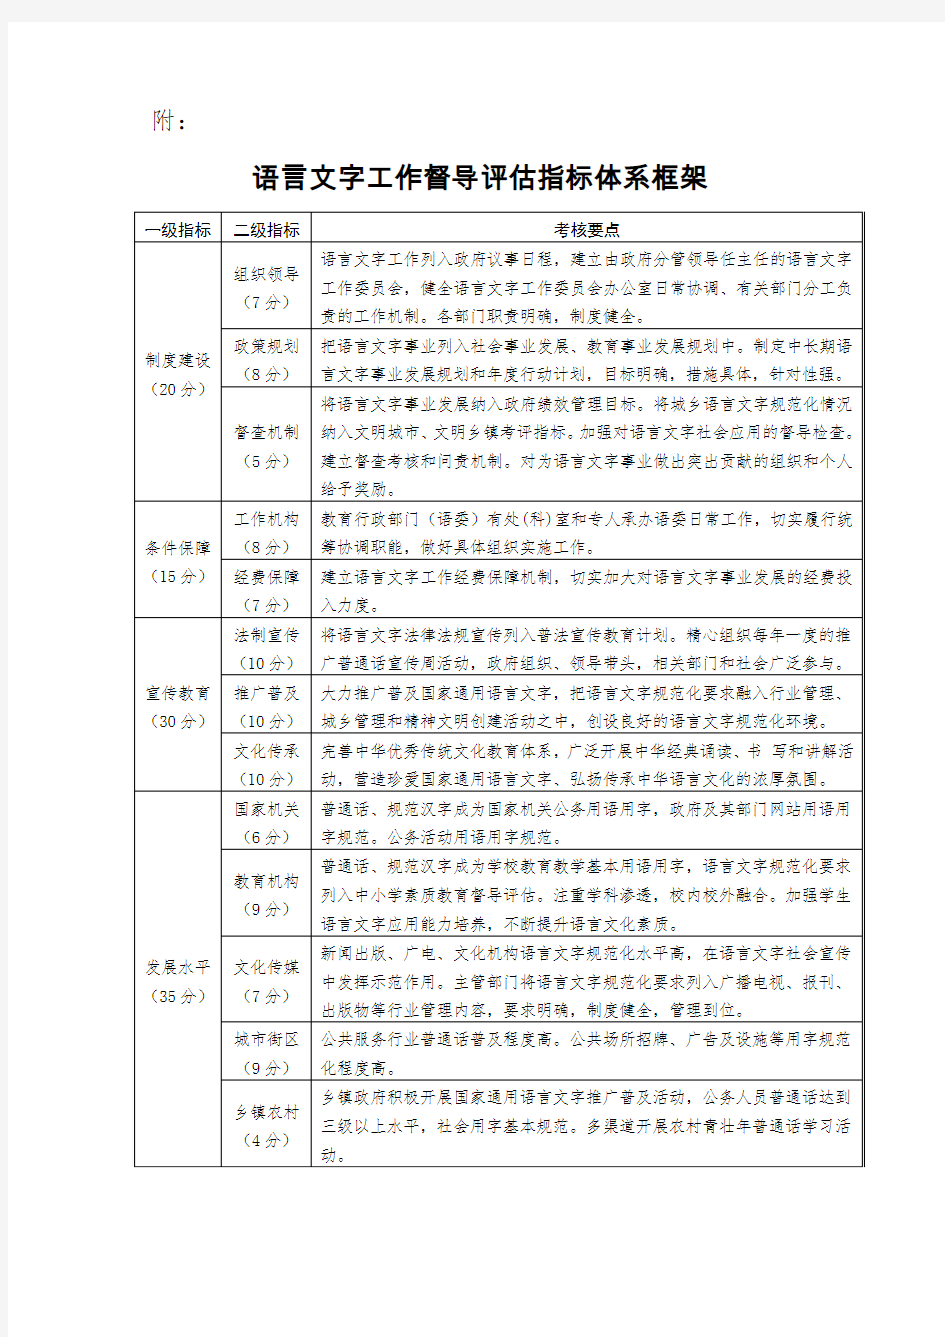 语言文字工作督导评估指标体系框架 - 江西语言文字